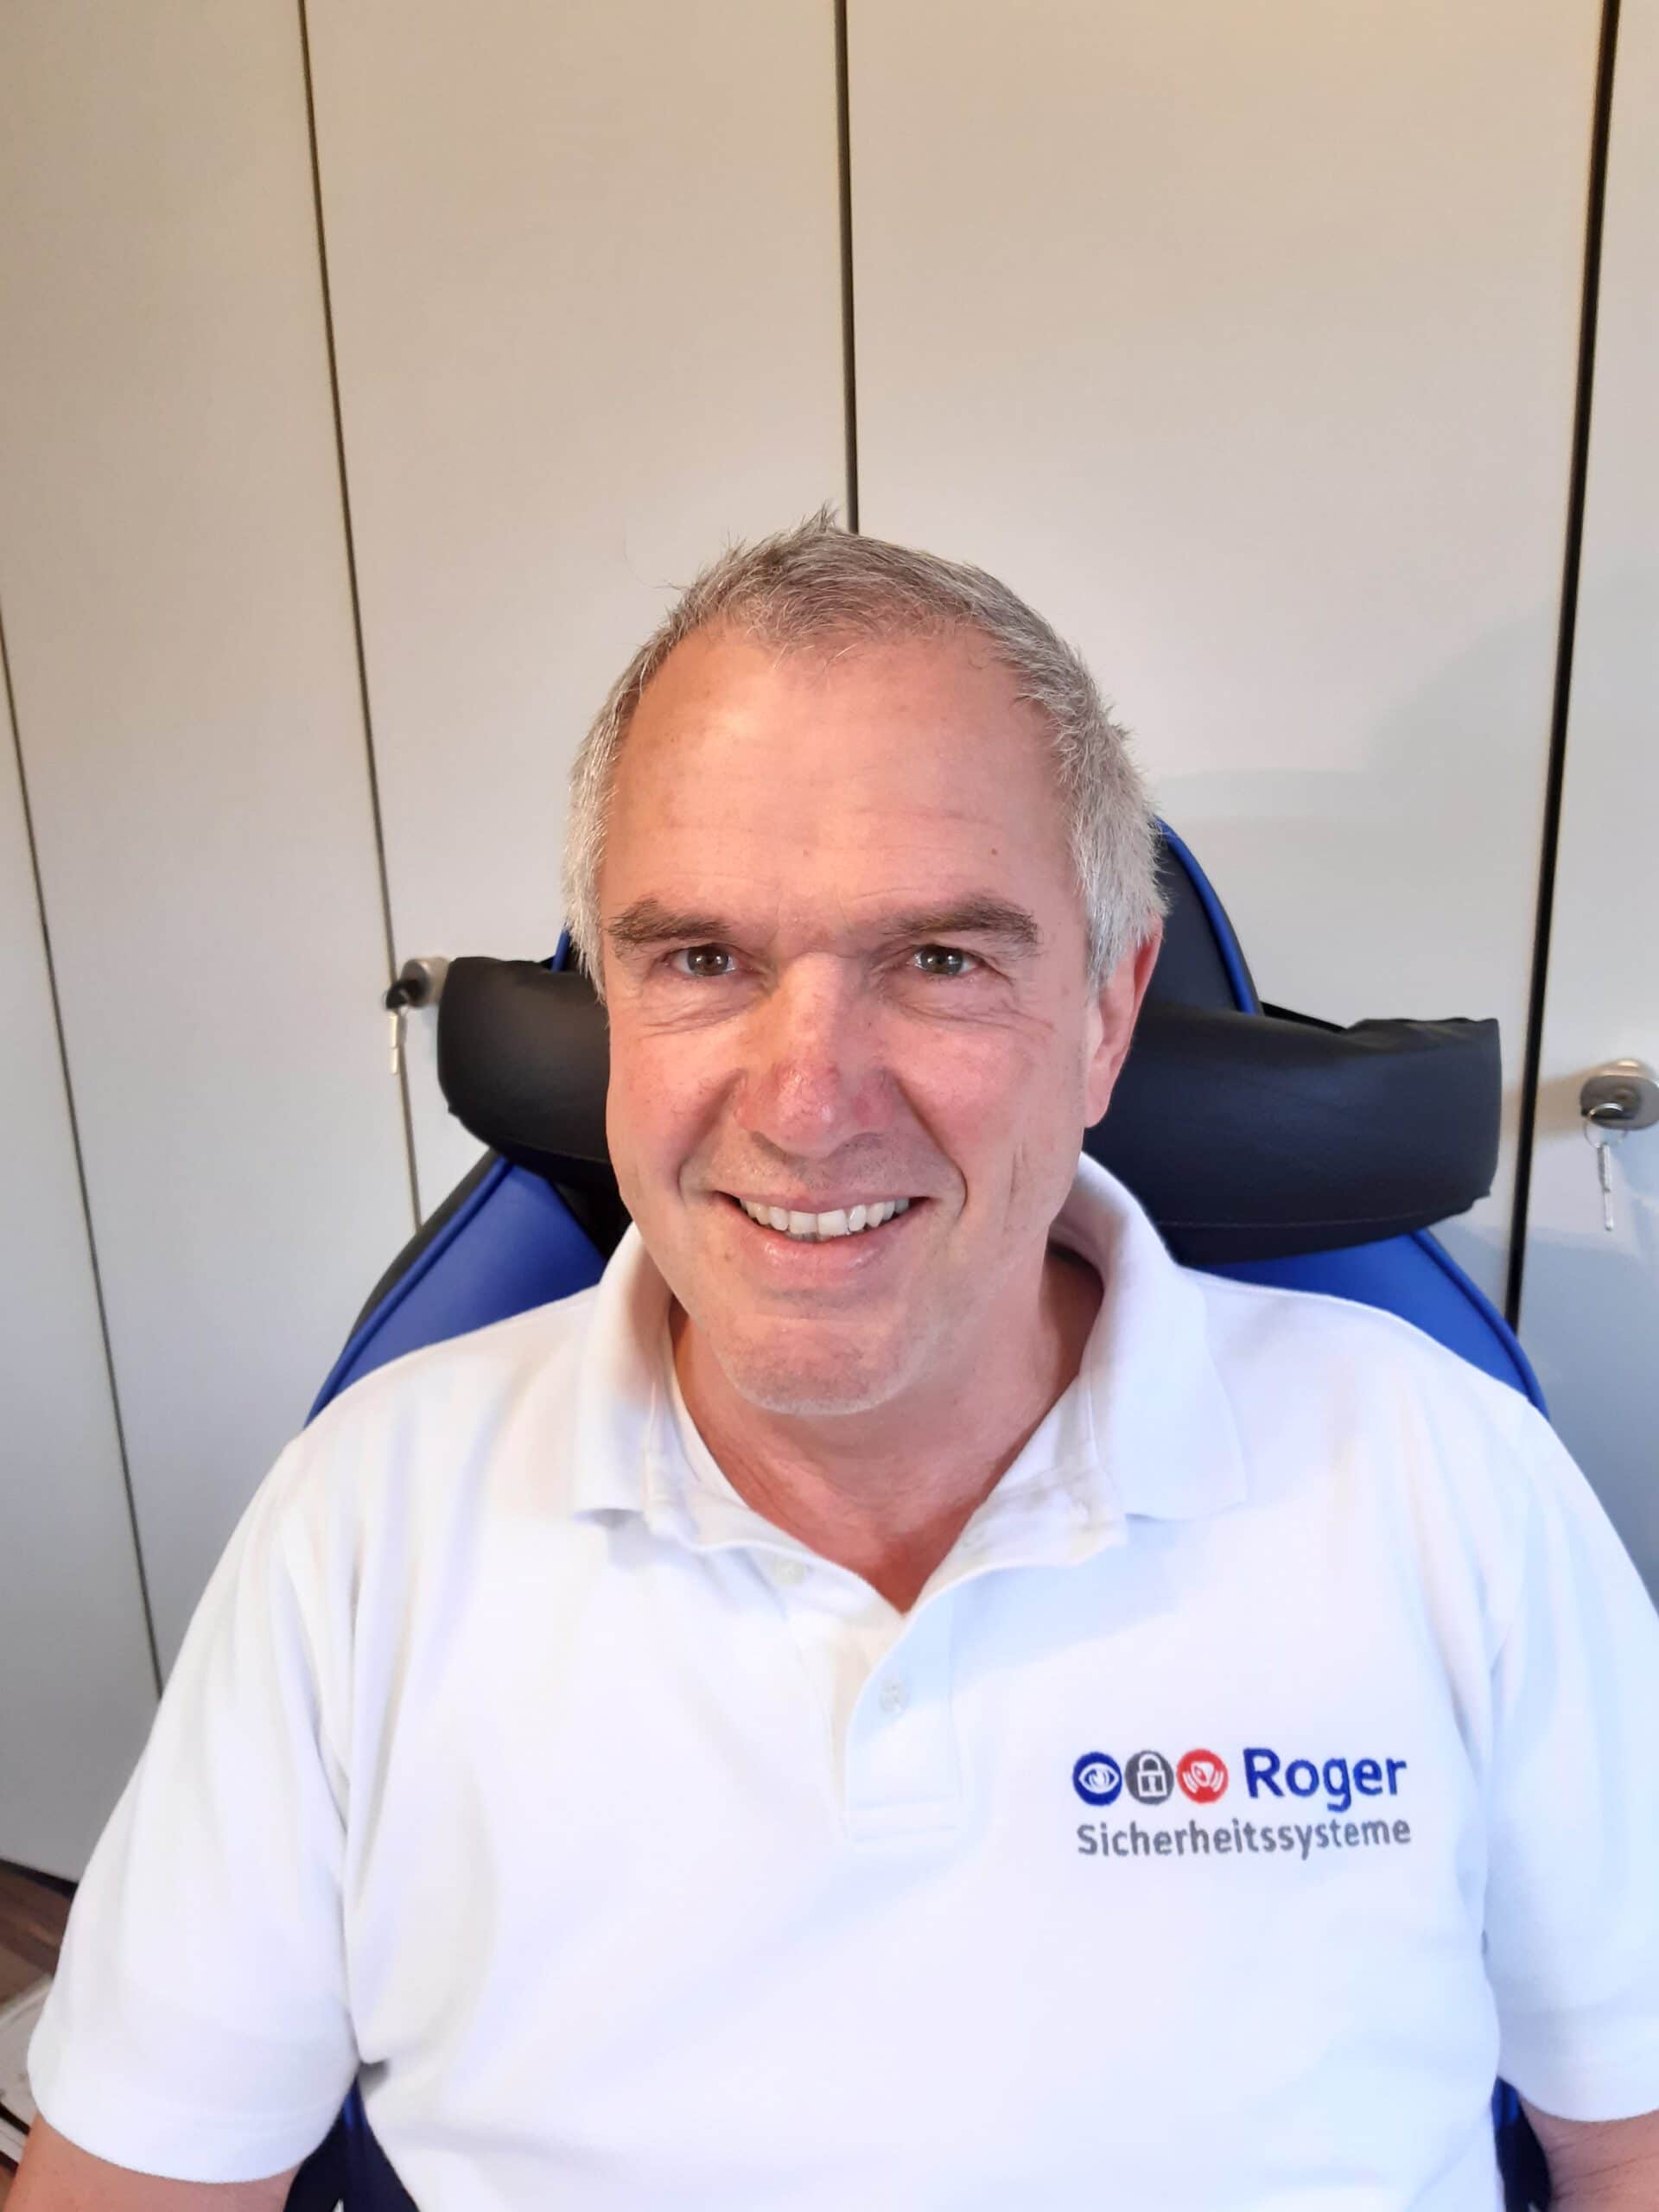 Ernst Georg Roger, Geschäftsführer Roger Sicherheitssysteme GmbH